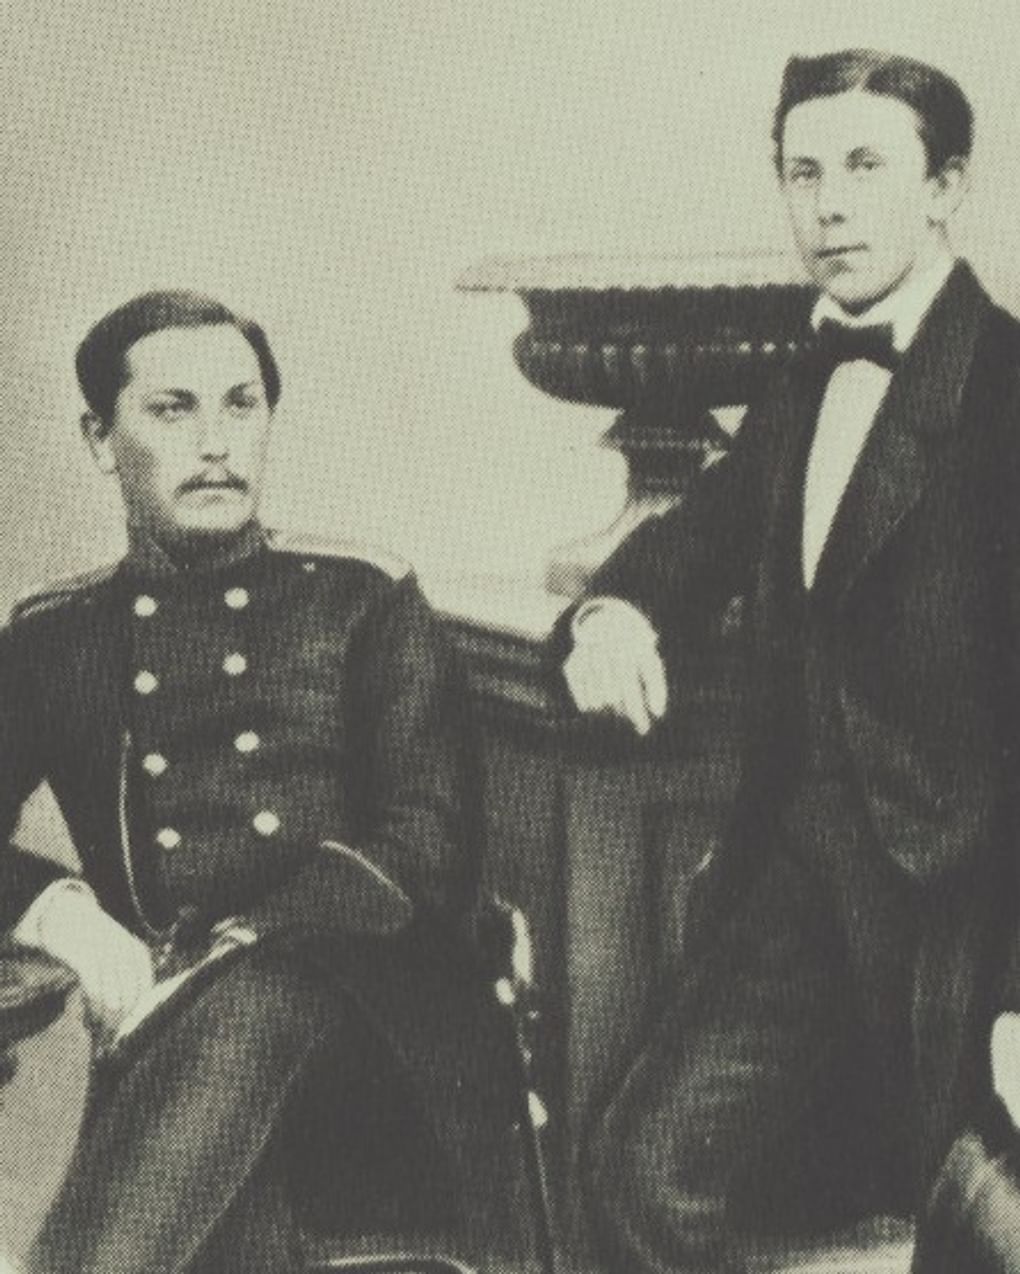 Модест Мусоргский (справа) с братом Филаретом Мусоргским. 1858. Фотография: mussorgsky.ru